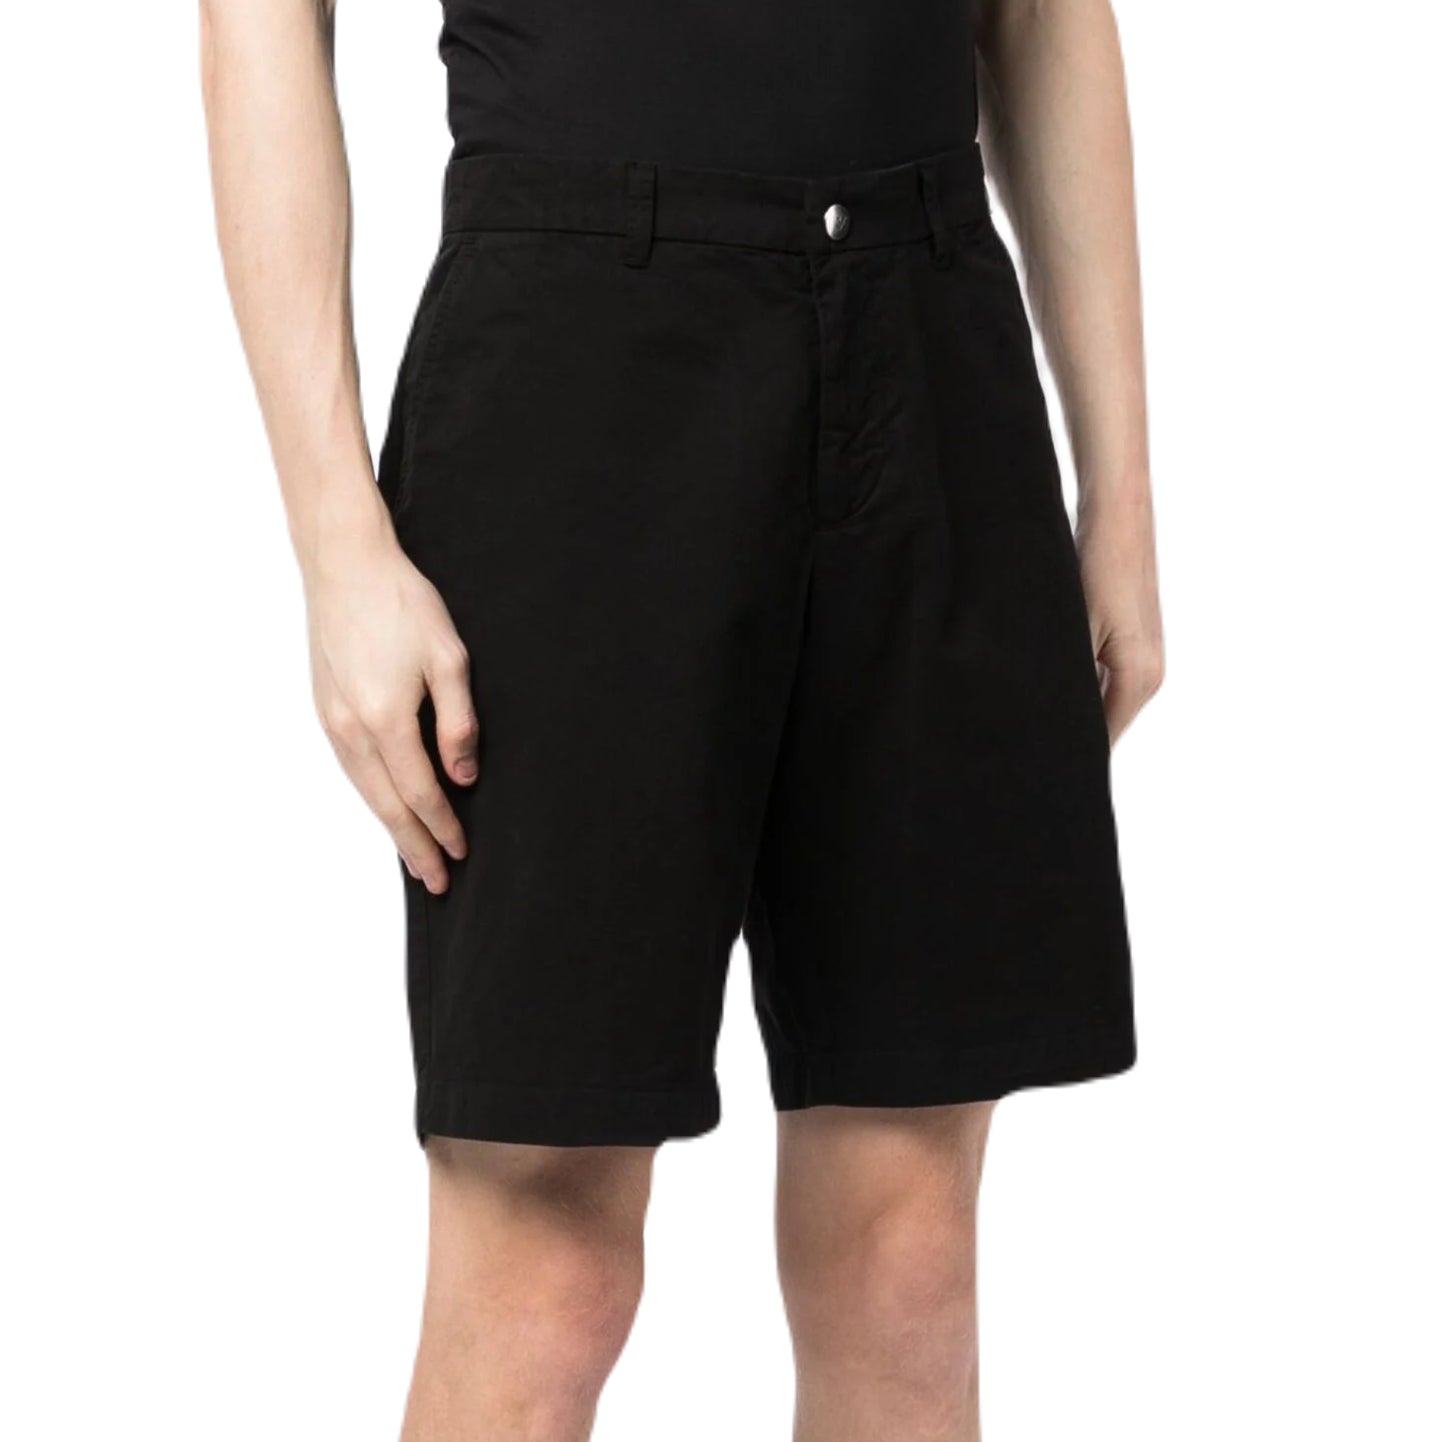 Emporio Armani 211824 Bermuda Shorts - 020 Black - Escape Menswear